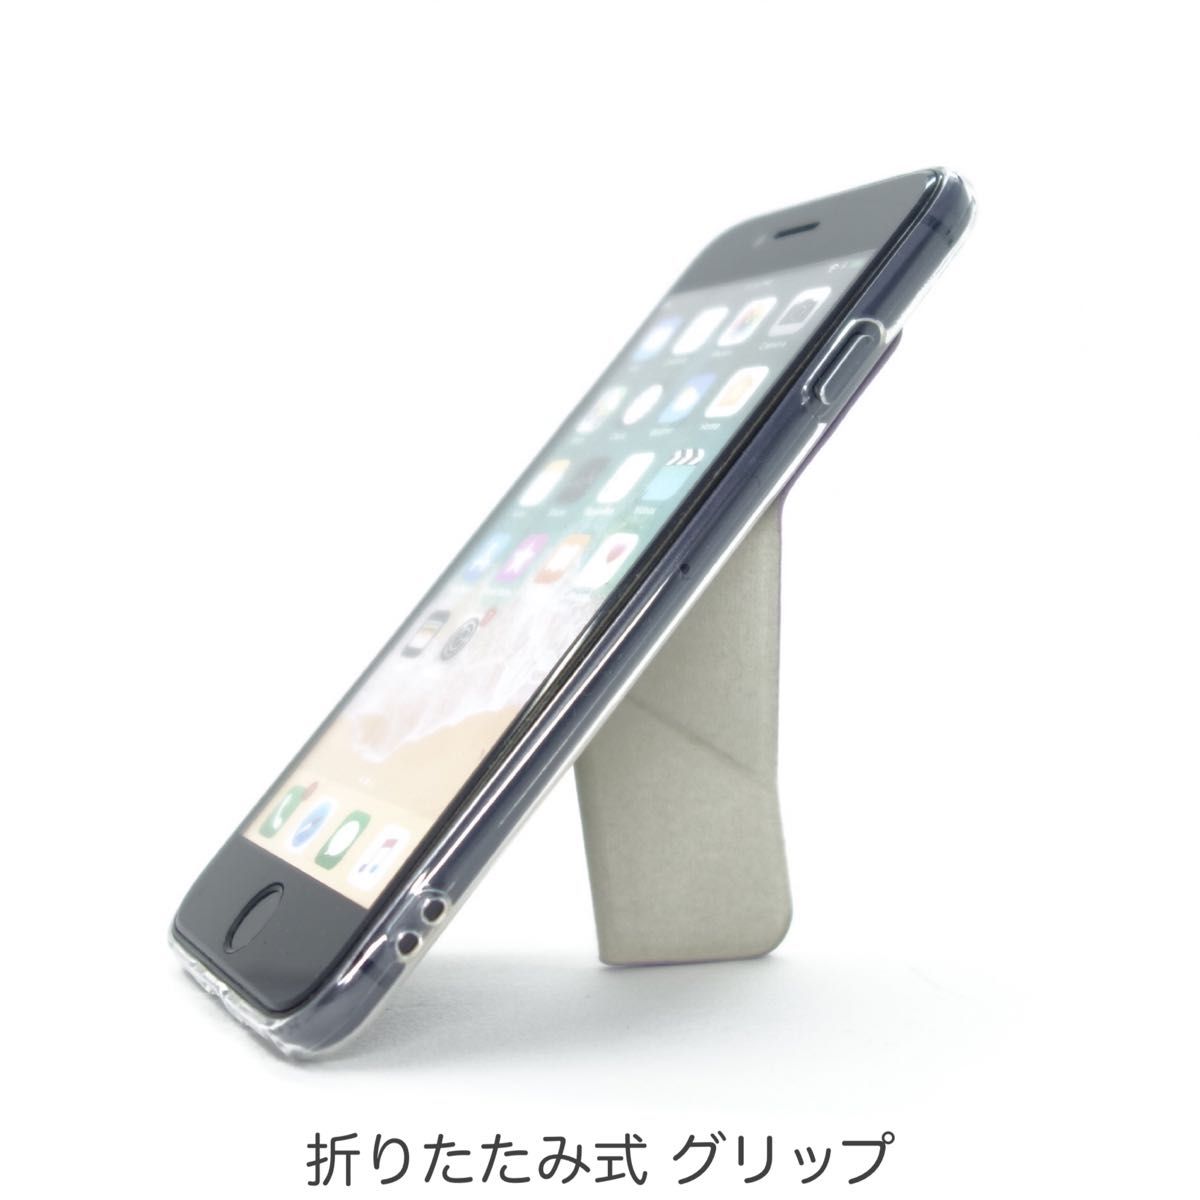 iPhone ケース SE3 SE2 8 7 スマホスタンド スマホグリップ マグネット内蔵 ワイヤレス充電OK バイオレット